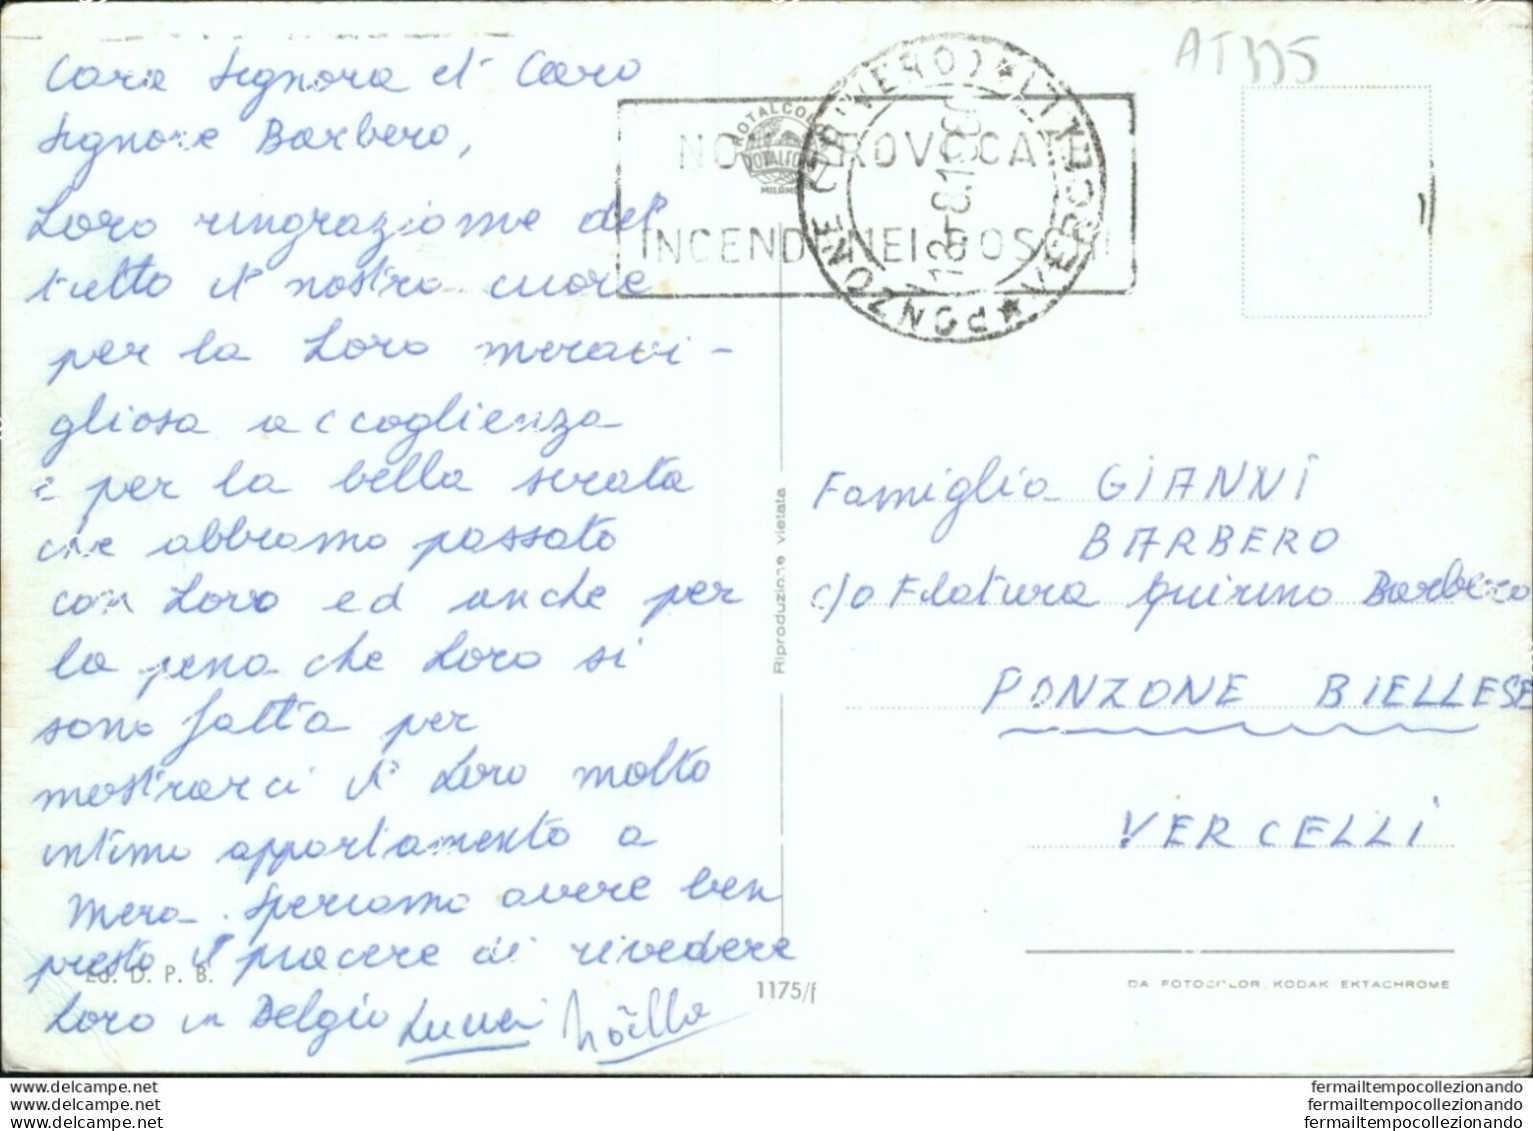 At335 Cartolina Saluti Da Pesaro - Pesaro